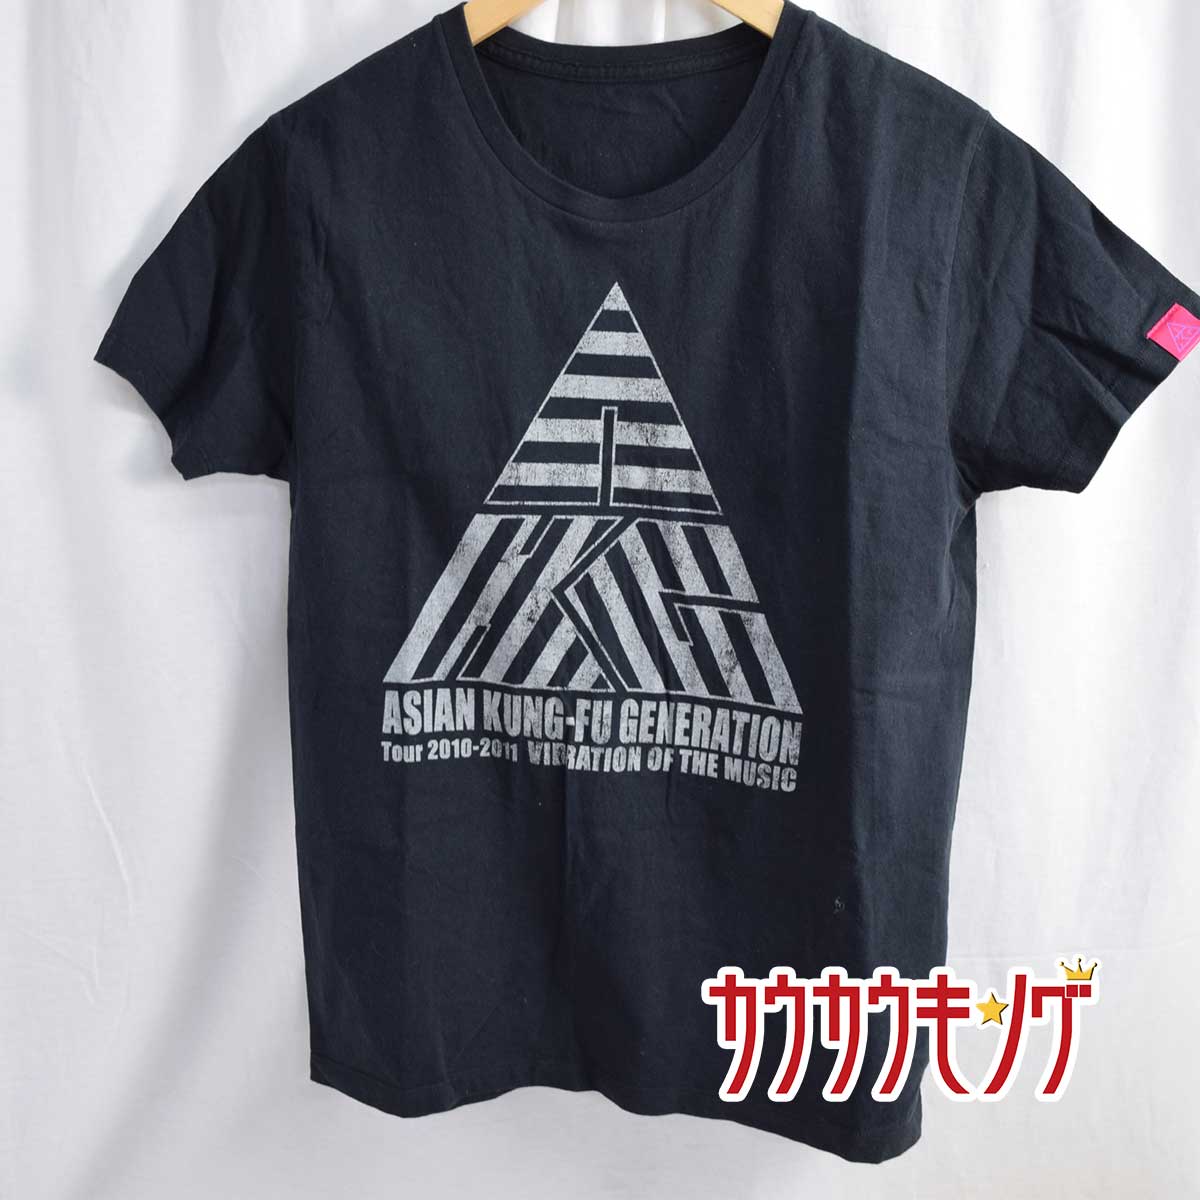 【中古】ASIAN KUNG-FU GENERATION Tour 2010-2011 Tシャツ アジカン S